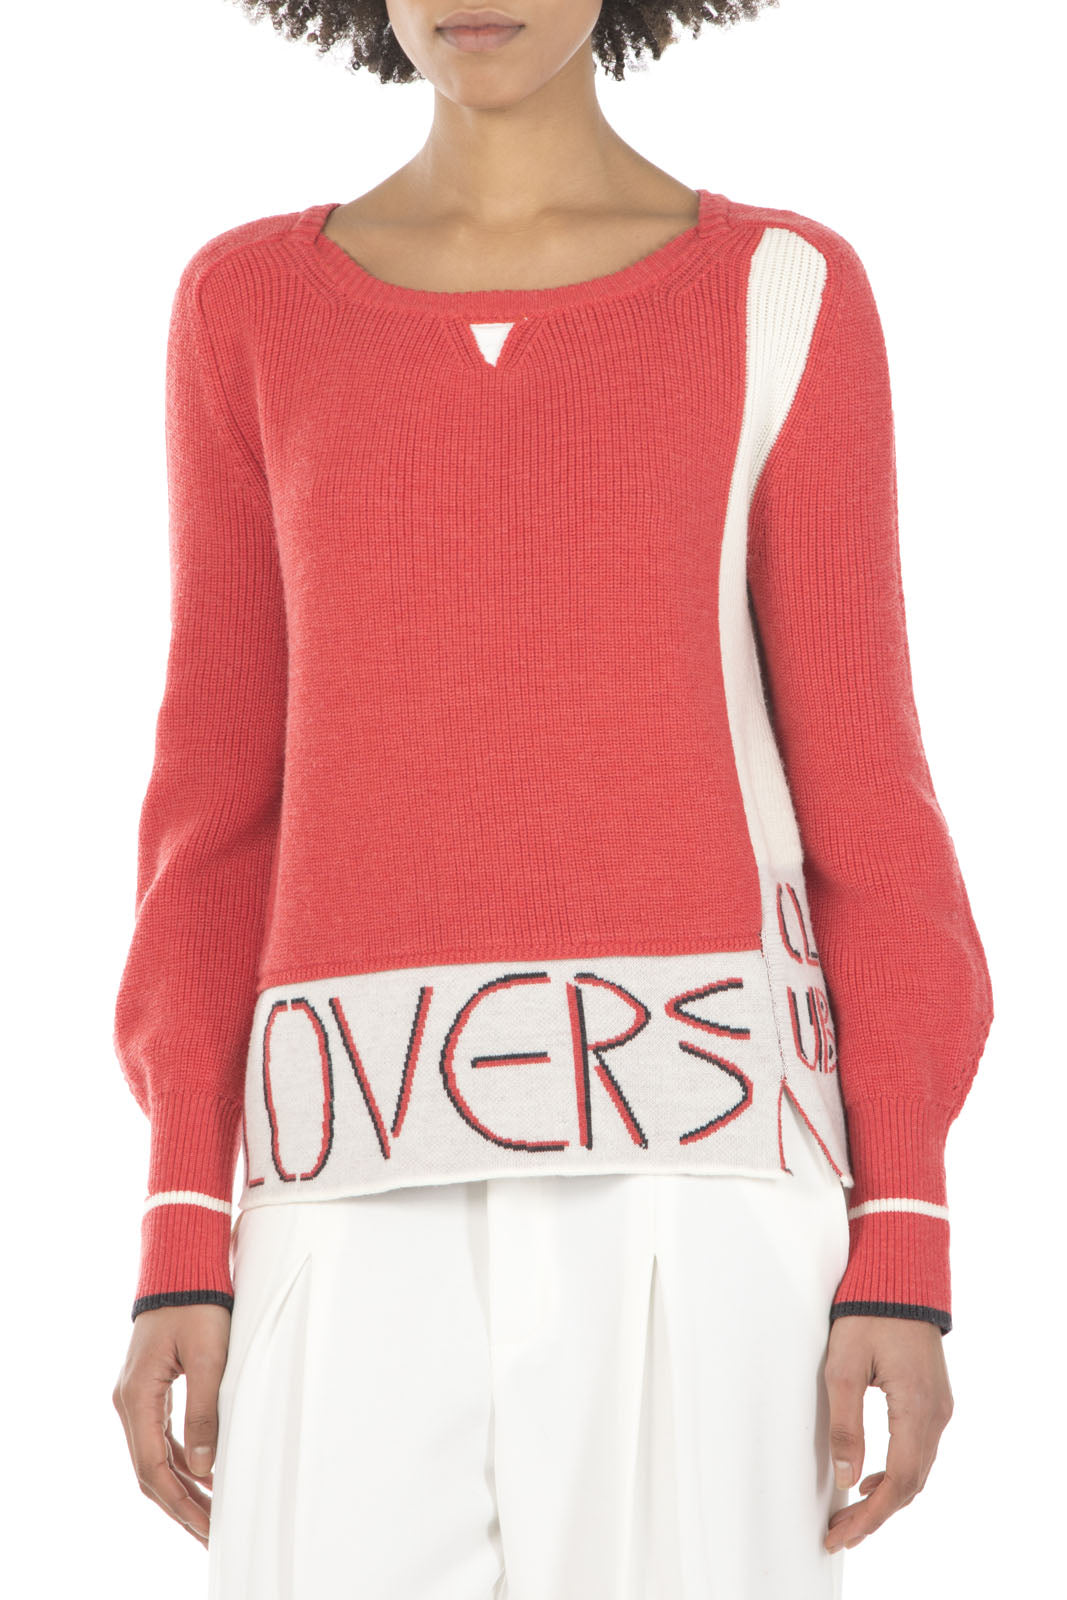 Elisa Cavaletti - Jacquard Pullover Sweater